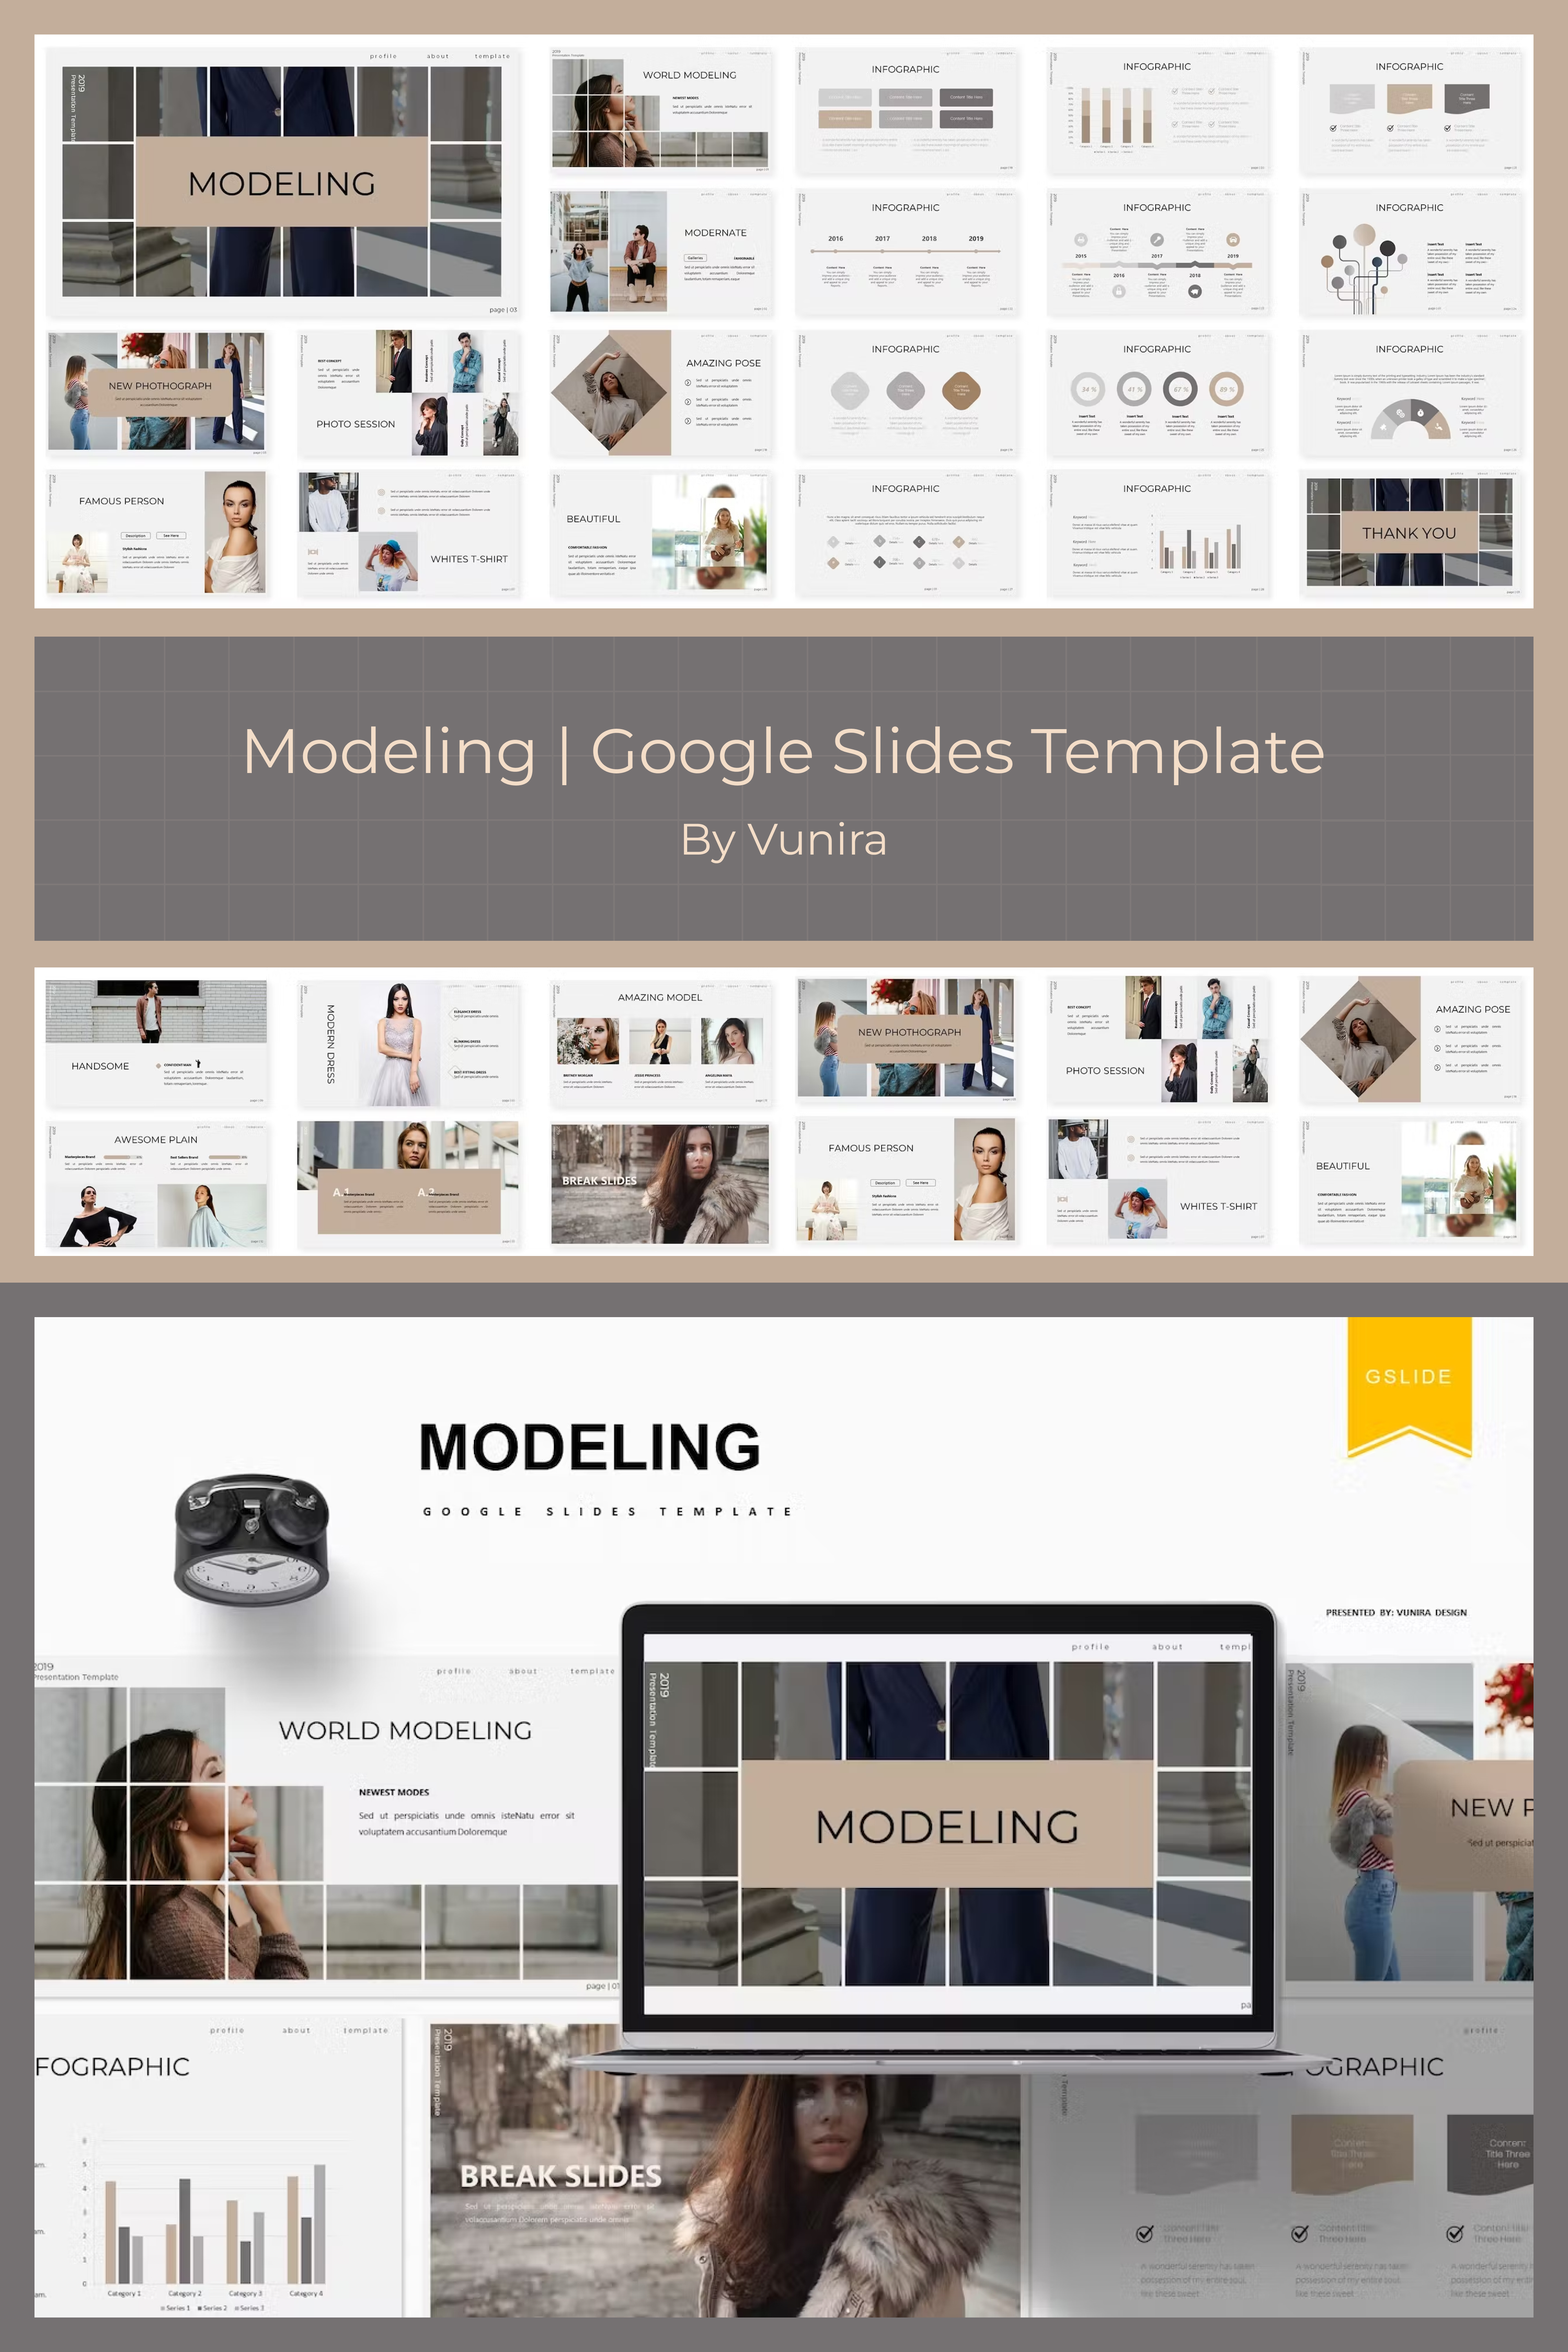 Modeling | Google Slides Template - Pinterest.